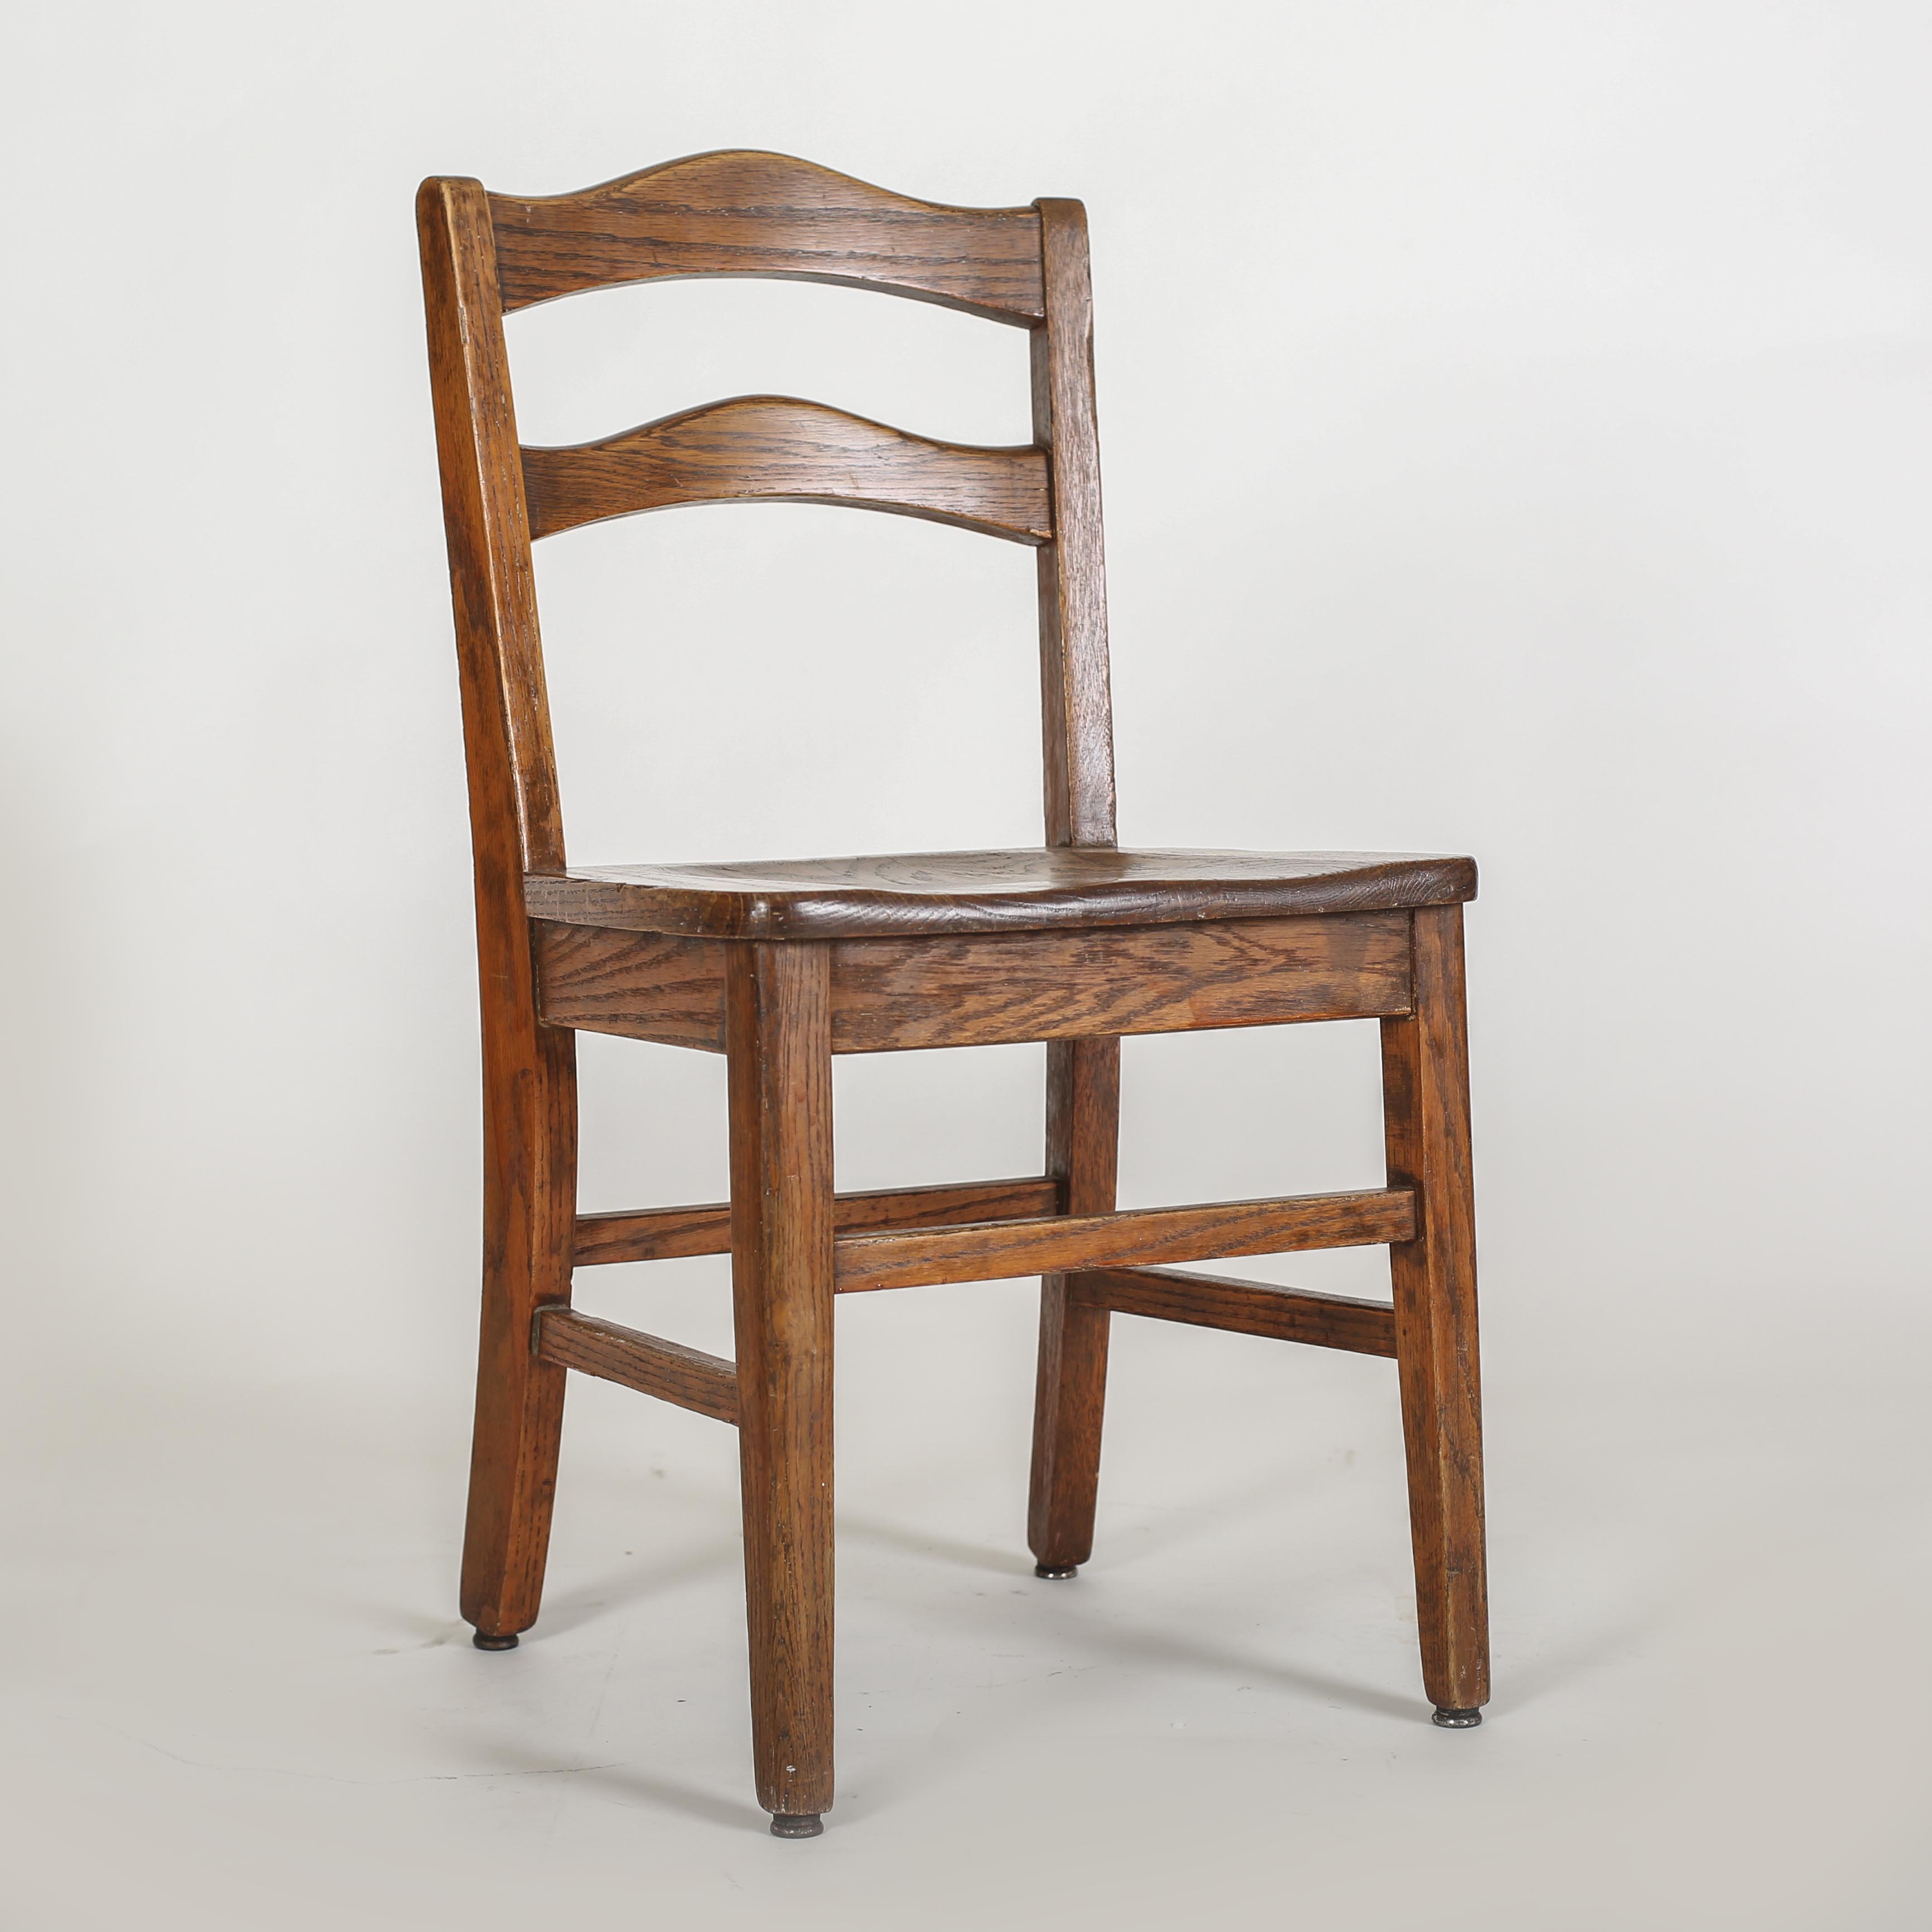 Wooden chair. Стул дерево. Простой деревянный стул. Стул деревянный Chairs. Стулья деревянные фасоны.